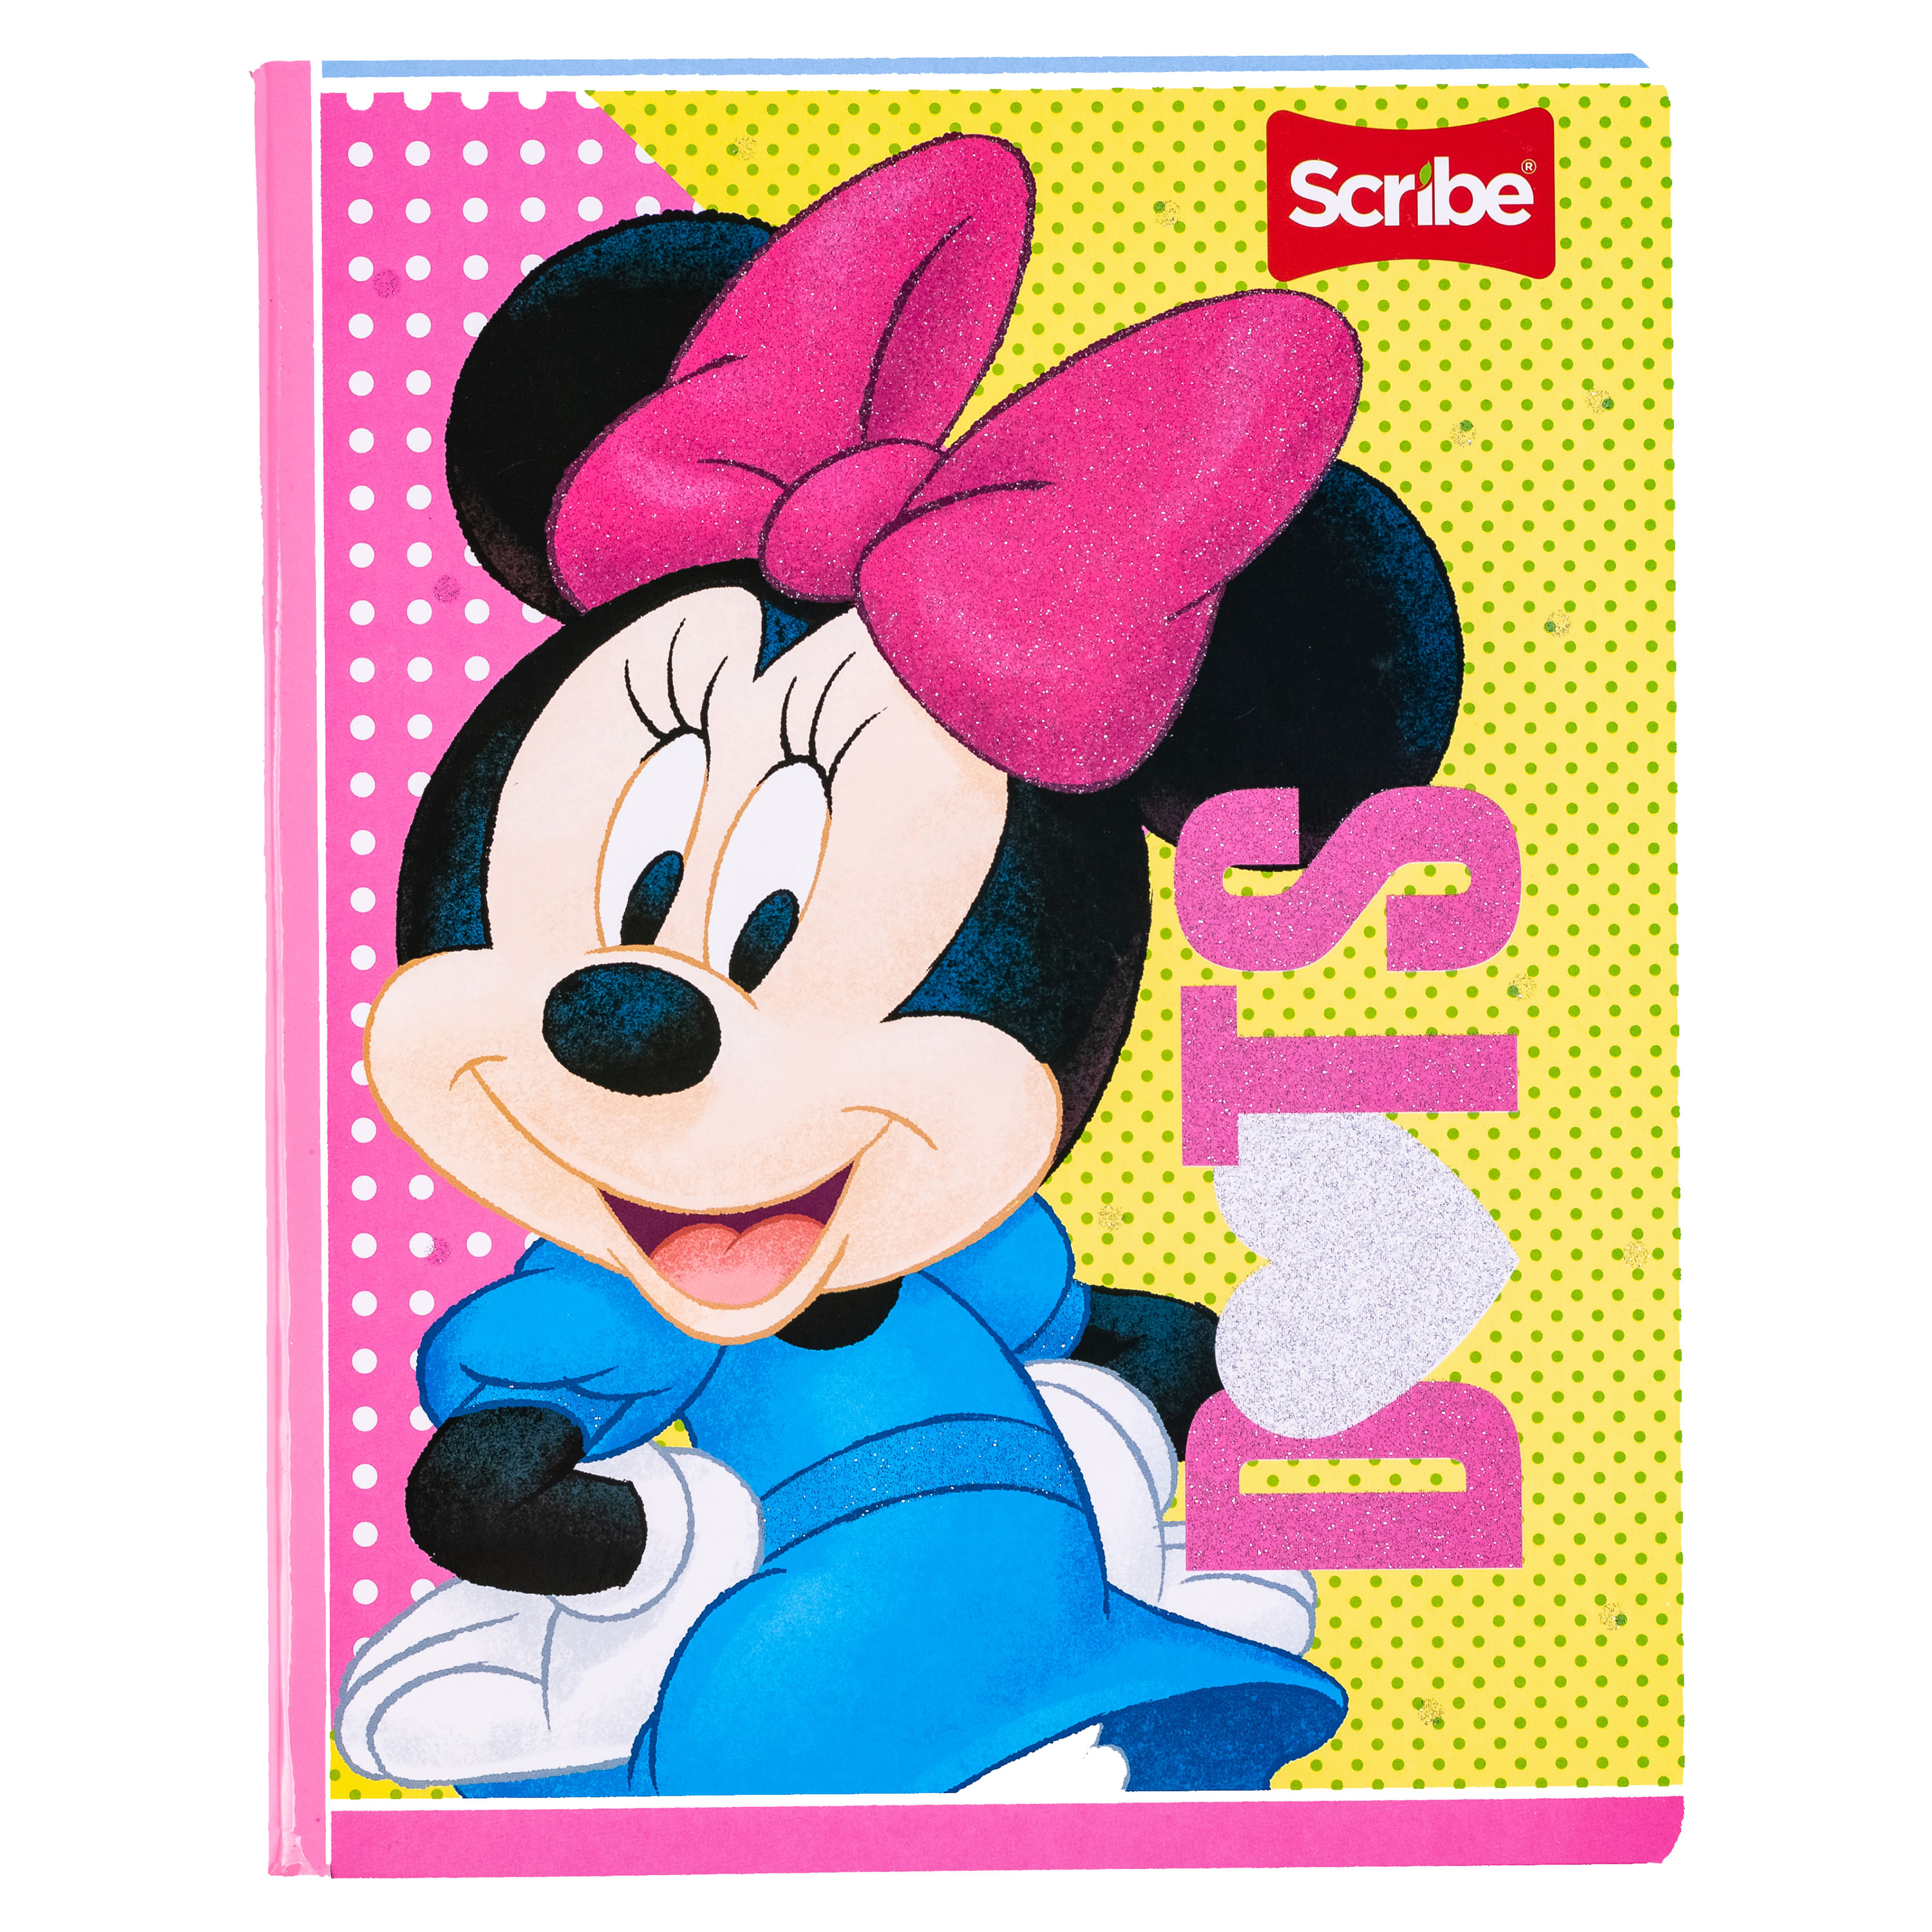 Comprar Cuaderno Cosido Marca Scribe de Colores Rayado Diseño Minnie Mouse  de 100 hojas - unidad | Walmart Honduras